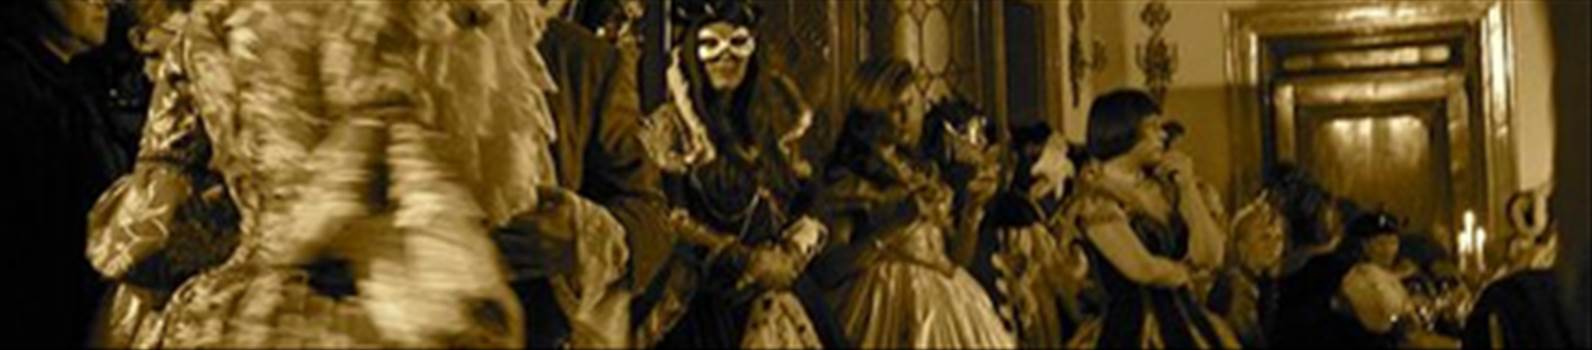 teronna-masquerade.jpg - 